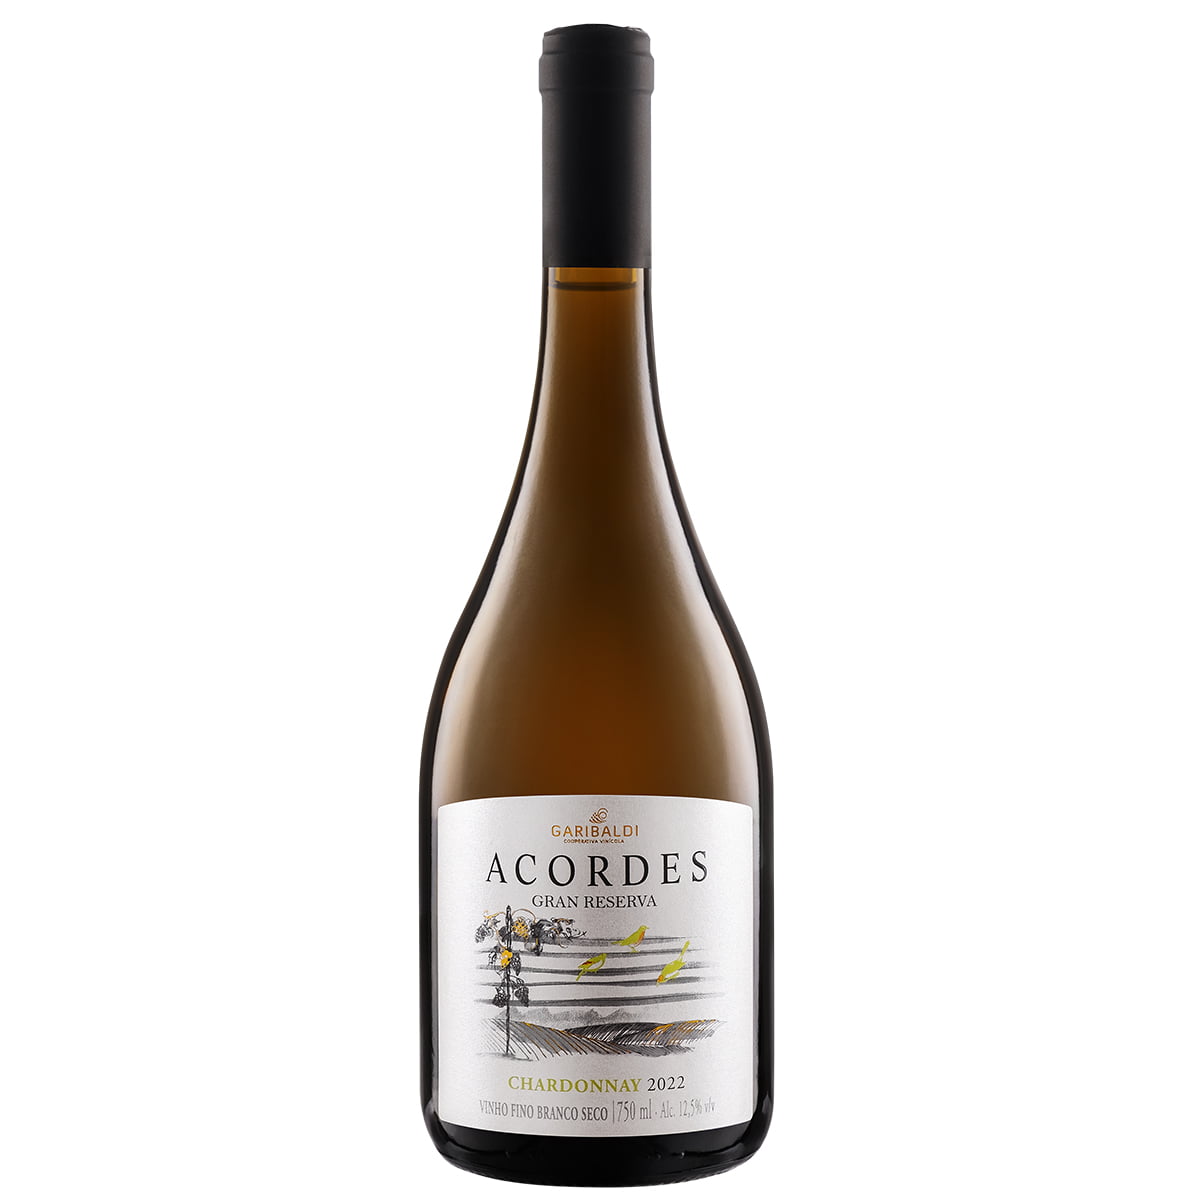 Vinho Garibaldi Acordes Gran Reserva Chardonnay Branco Seco 750ml